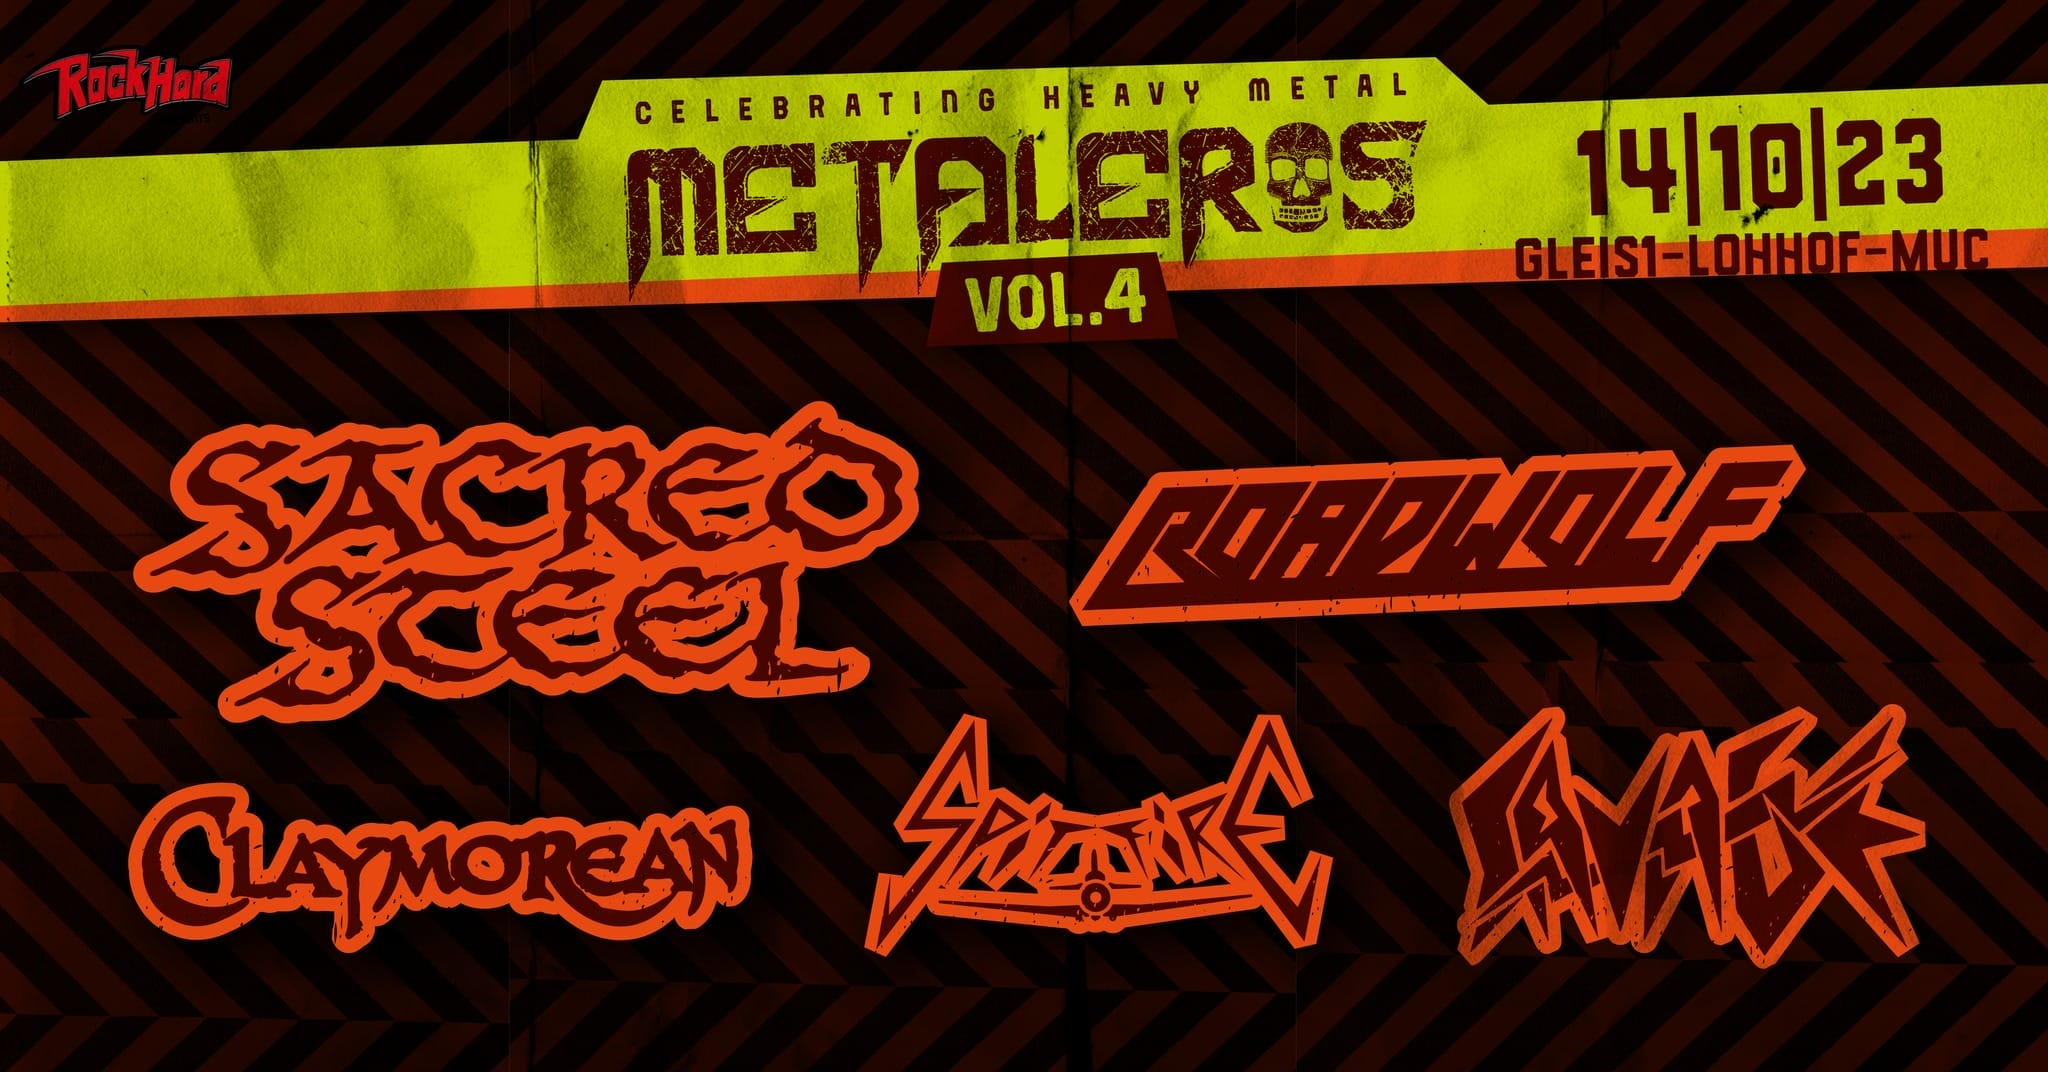 Das vollständige Line-Up des Metaleros Festival Volume 4